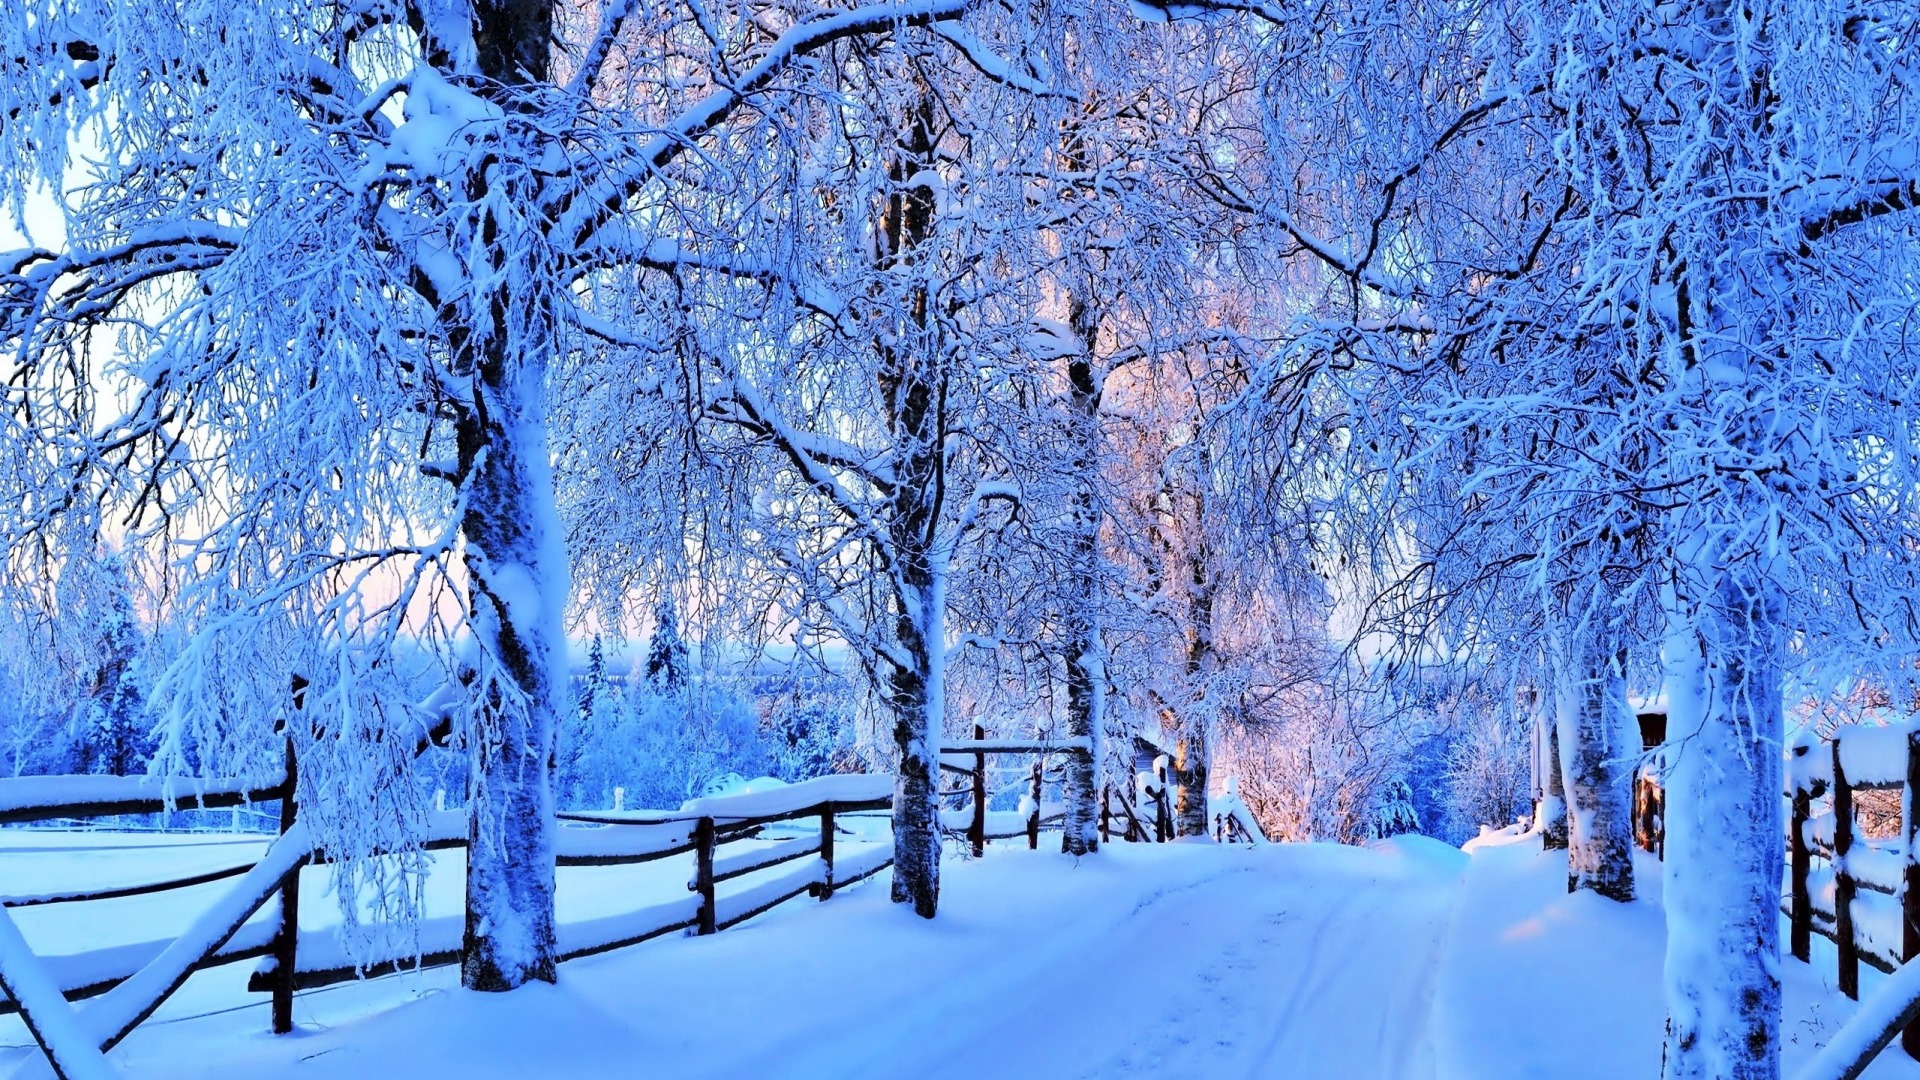 красивые фото зимы в высоком качестве